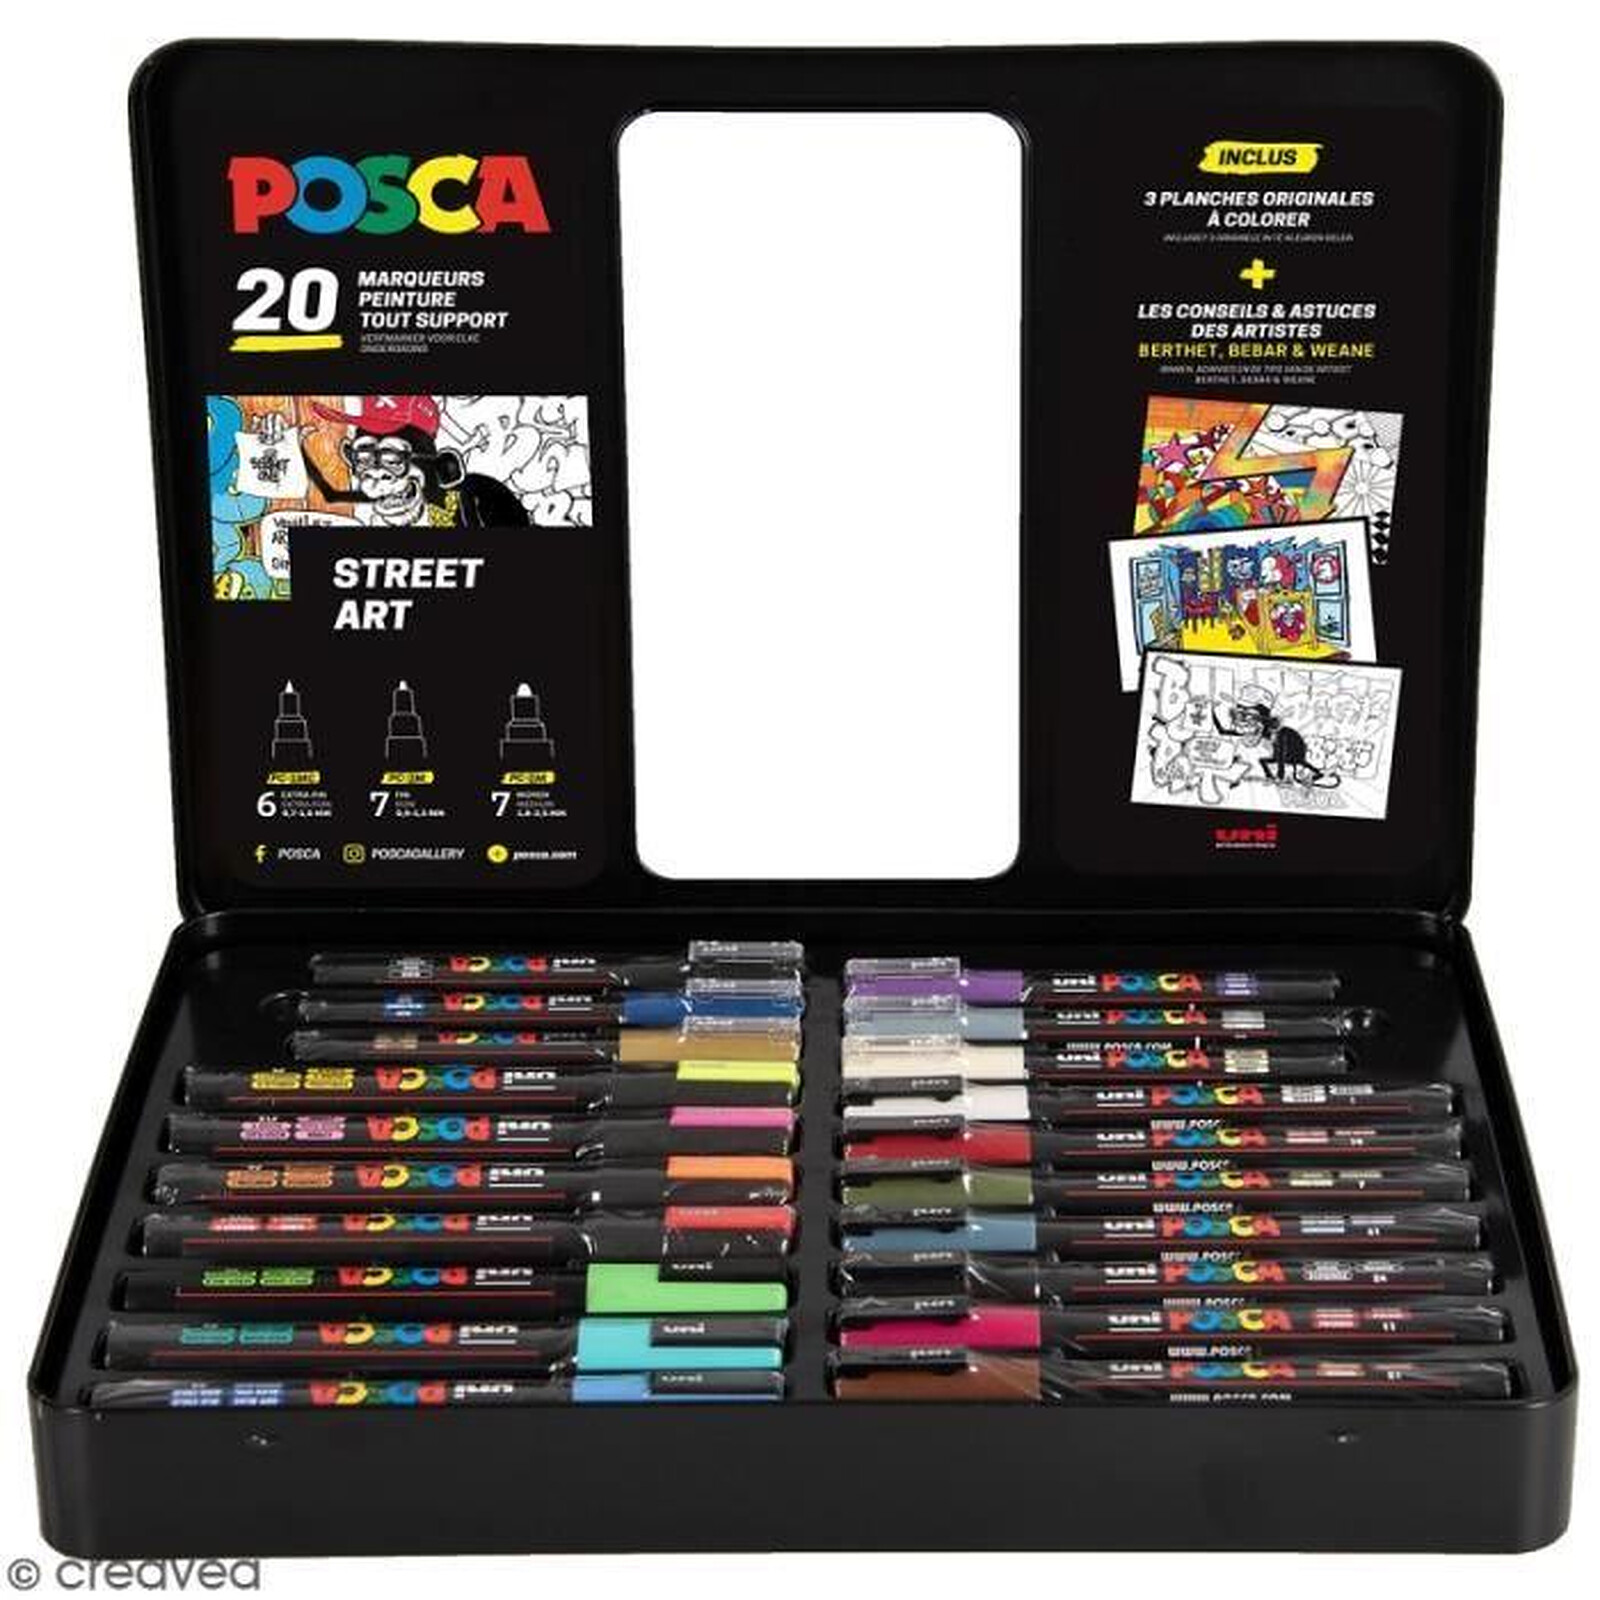 POSCA Lot de 2 Marqueurs PC1MC peinture pointe extra fine noir et blanc